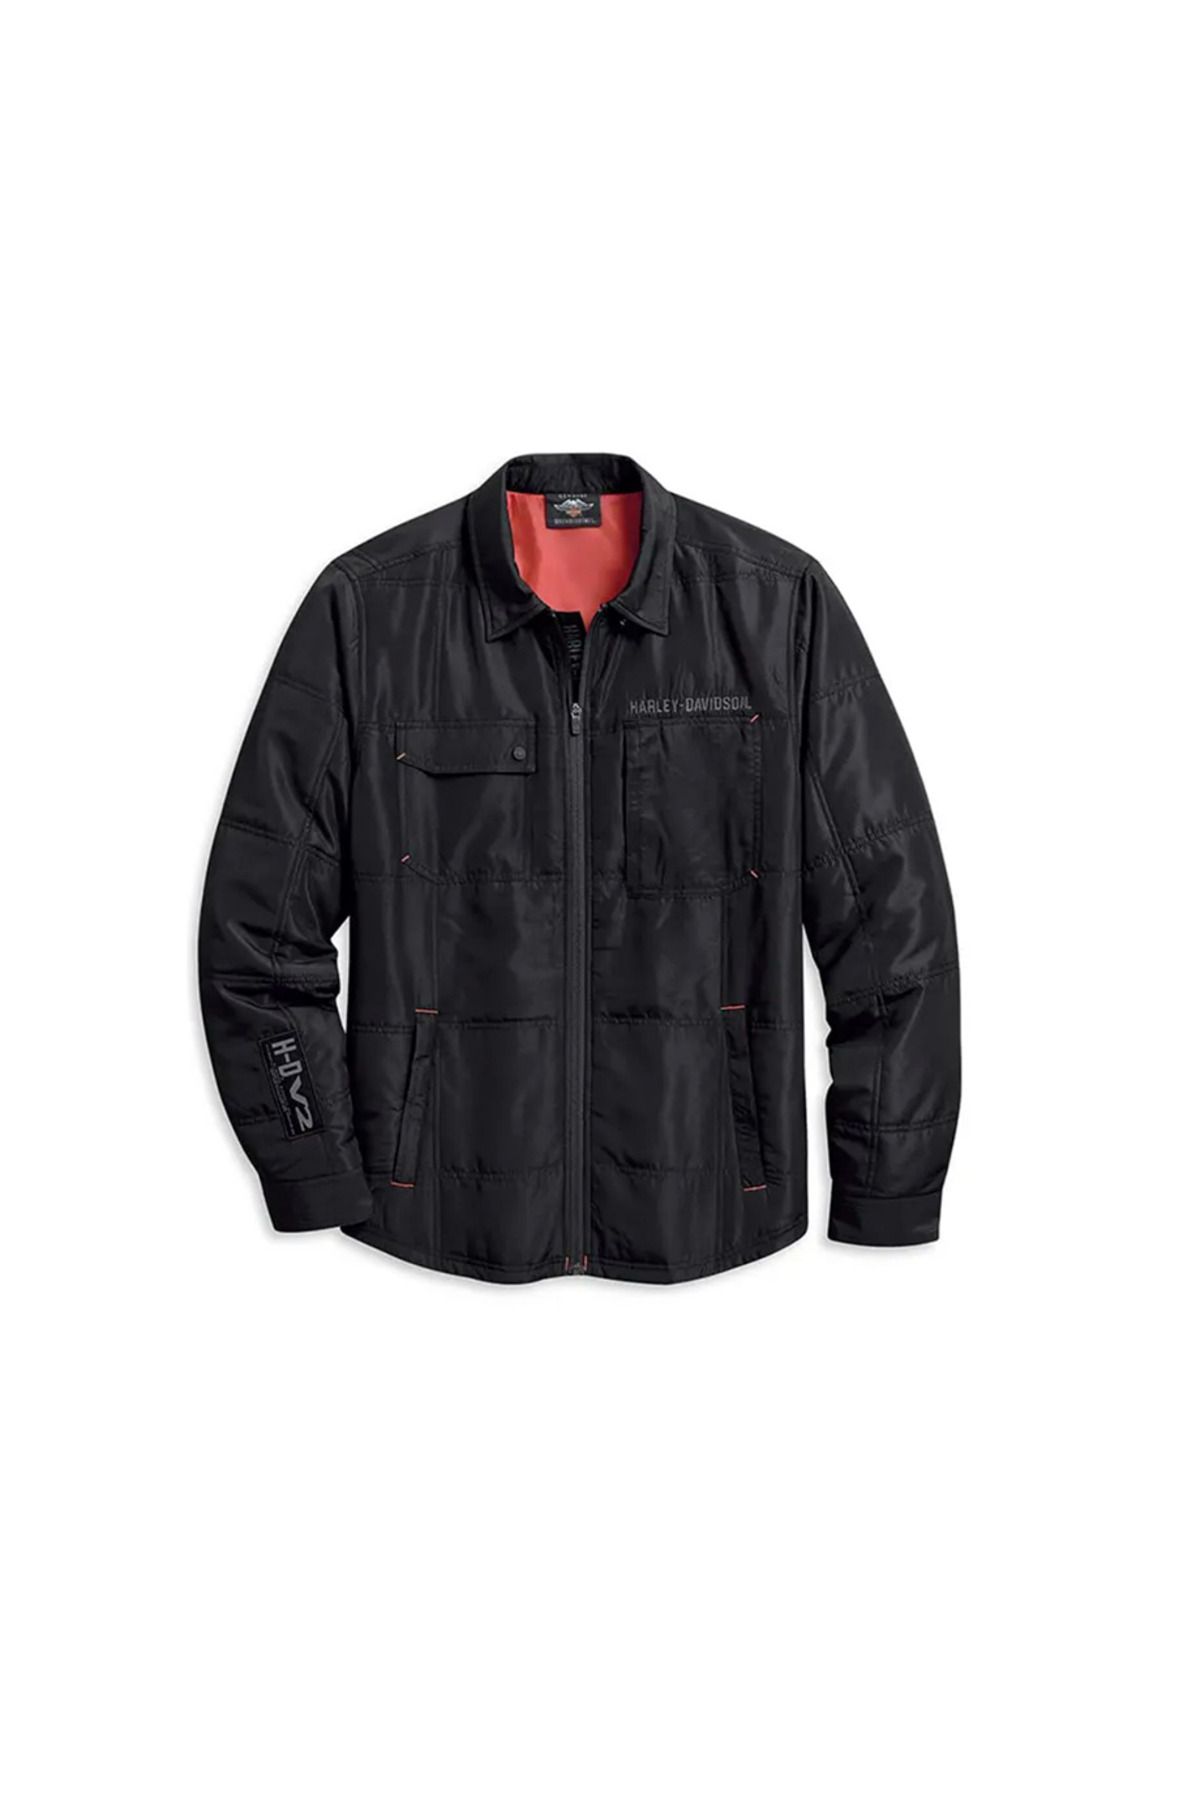 Harley Davidson Harley-Davidson Shirtjacket-Quilted, L/Siwvn, Pld